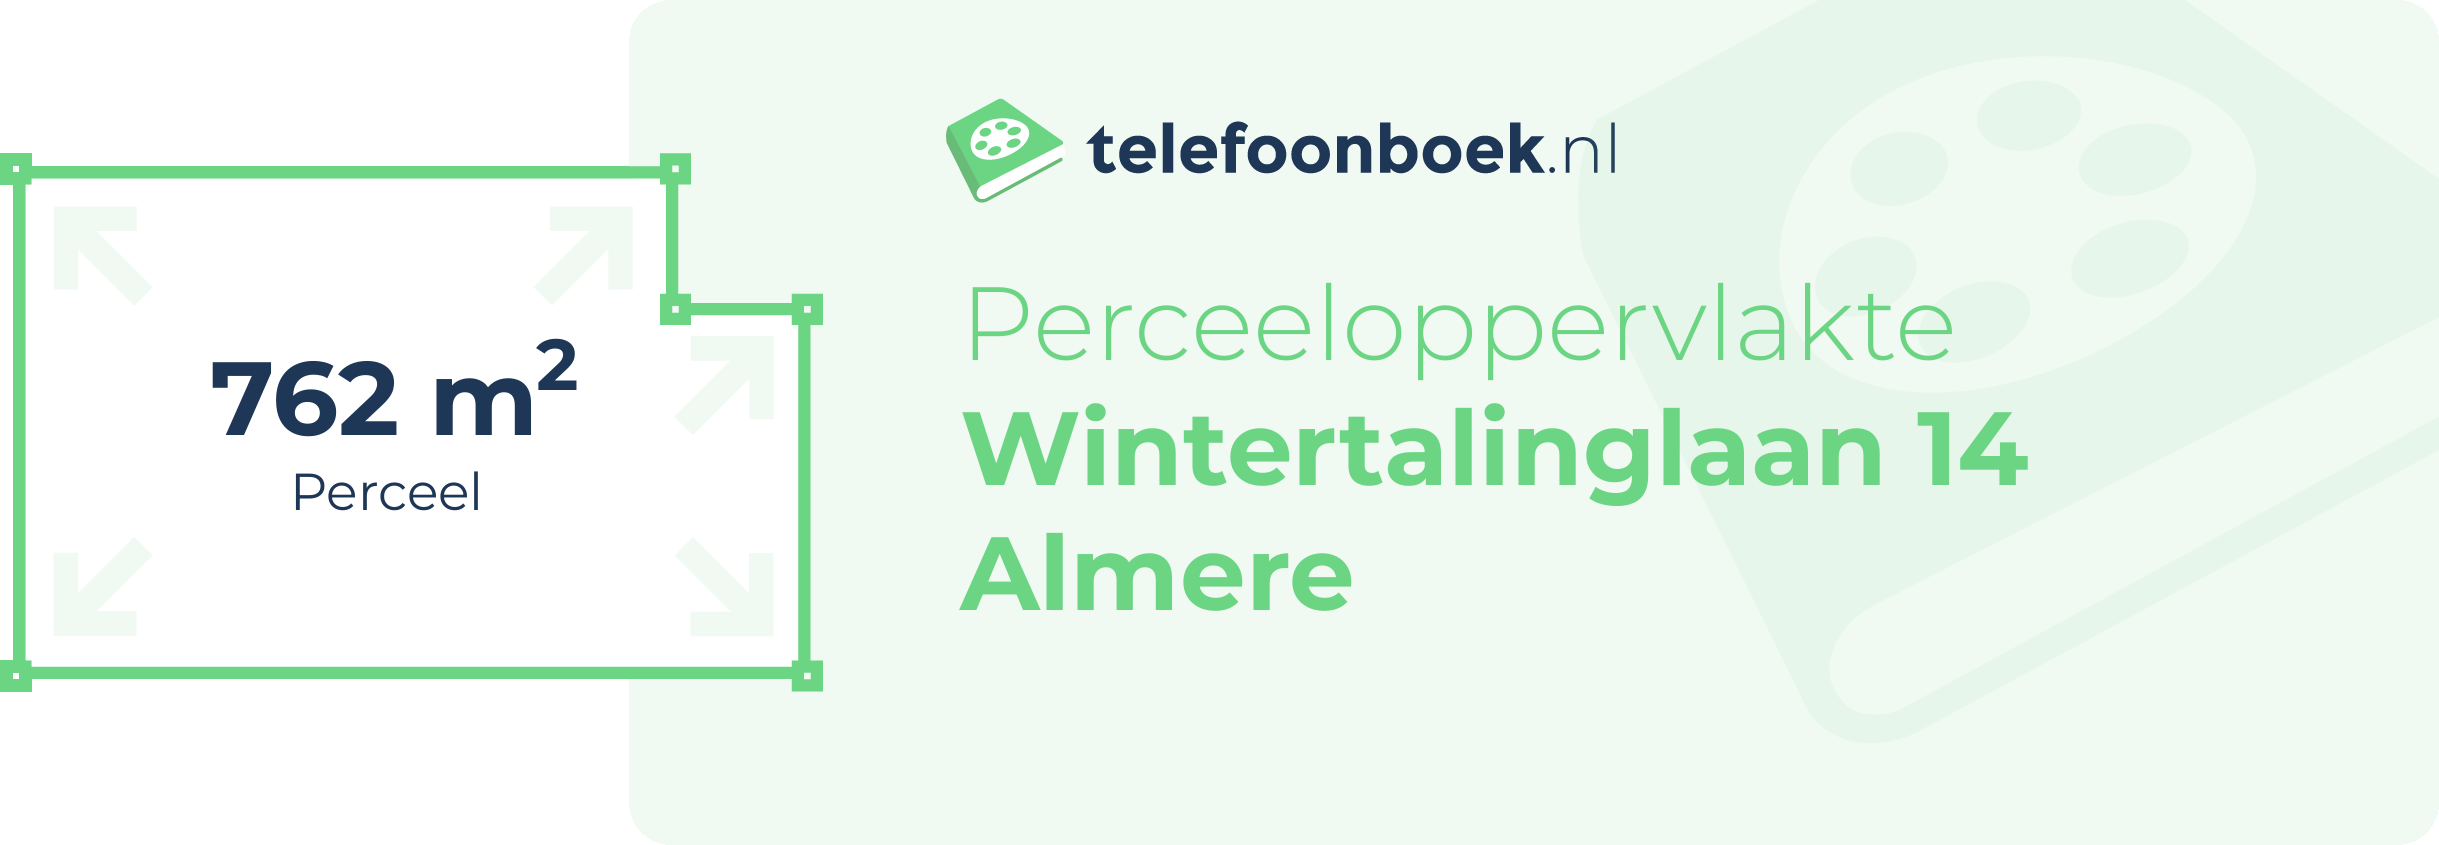 Perceeloppervlakte Wintertalinglaan 14 Almere